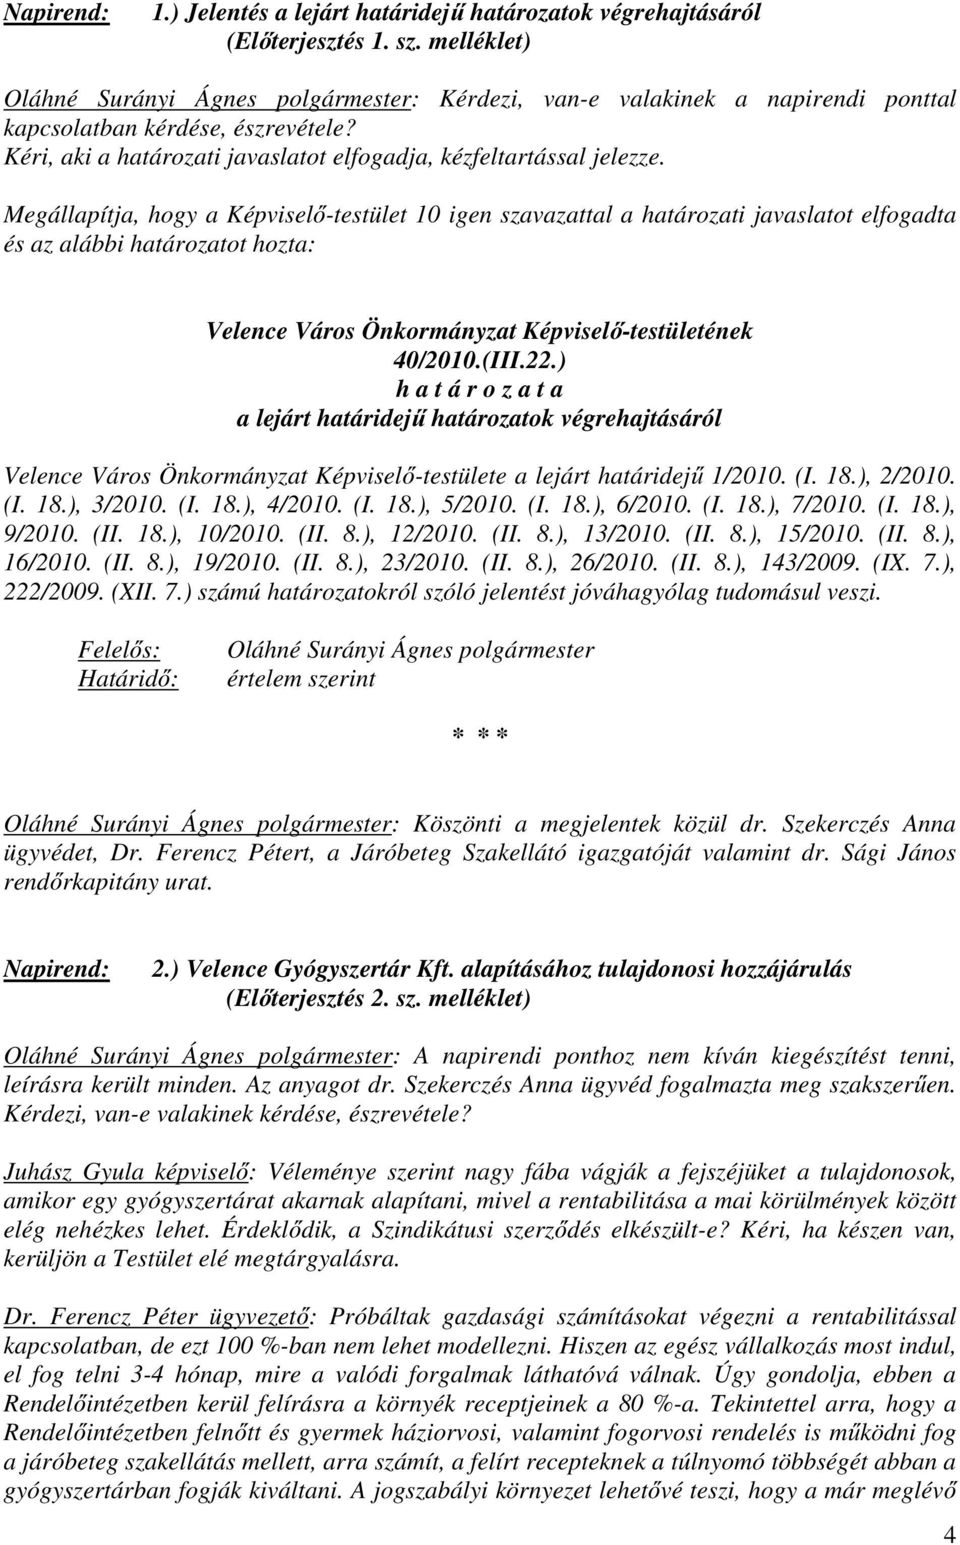 Megállapítja, hogy a Képviselő-testület 10 igen szavazattal a határozati javaslatot elfogadta és az alábbi határozatot hozta: Velence Város Önkormányzat Képviselő-testületének 40/2010.(III.22.